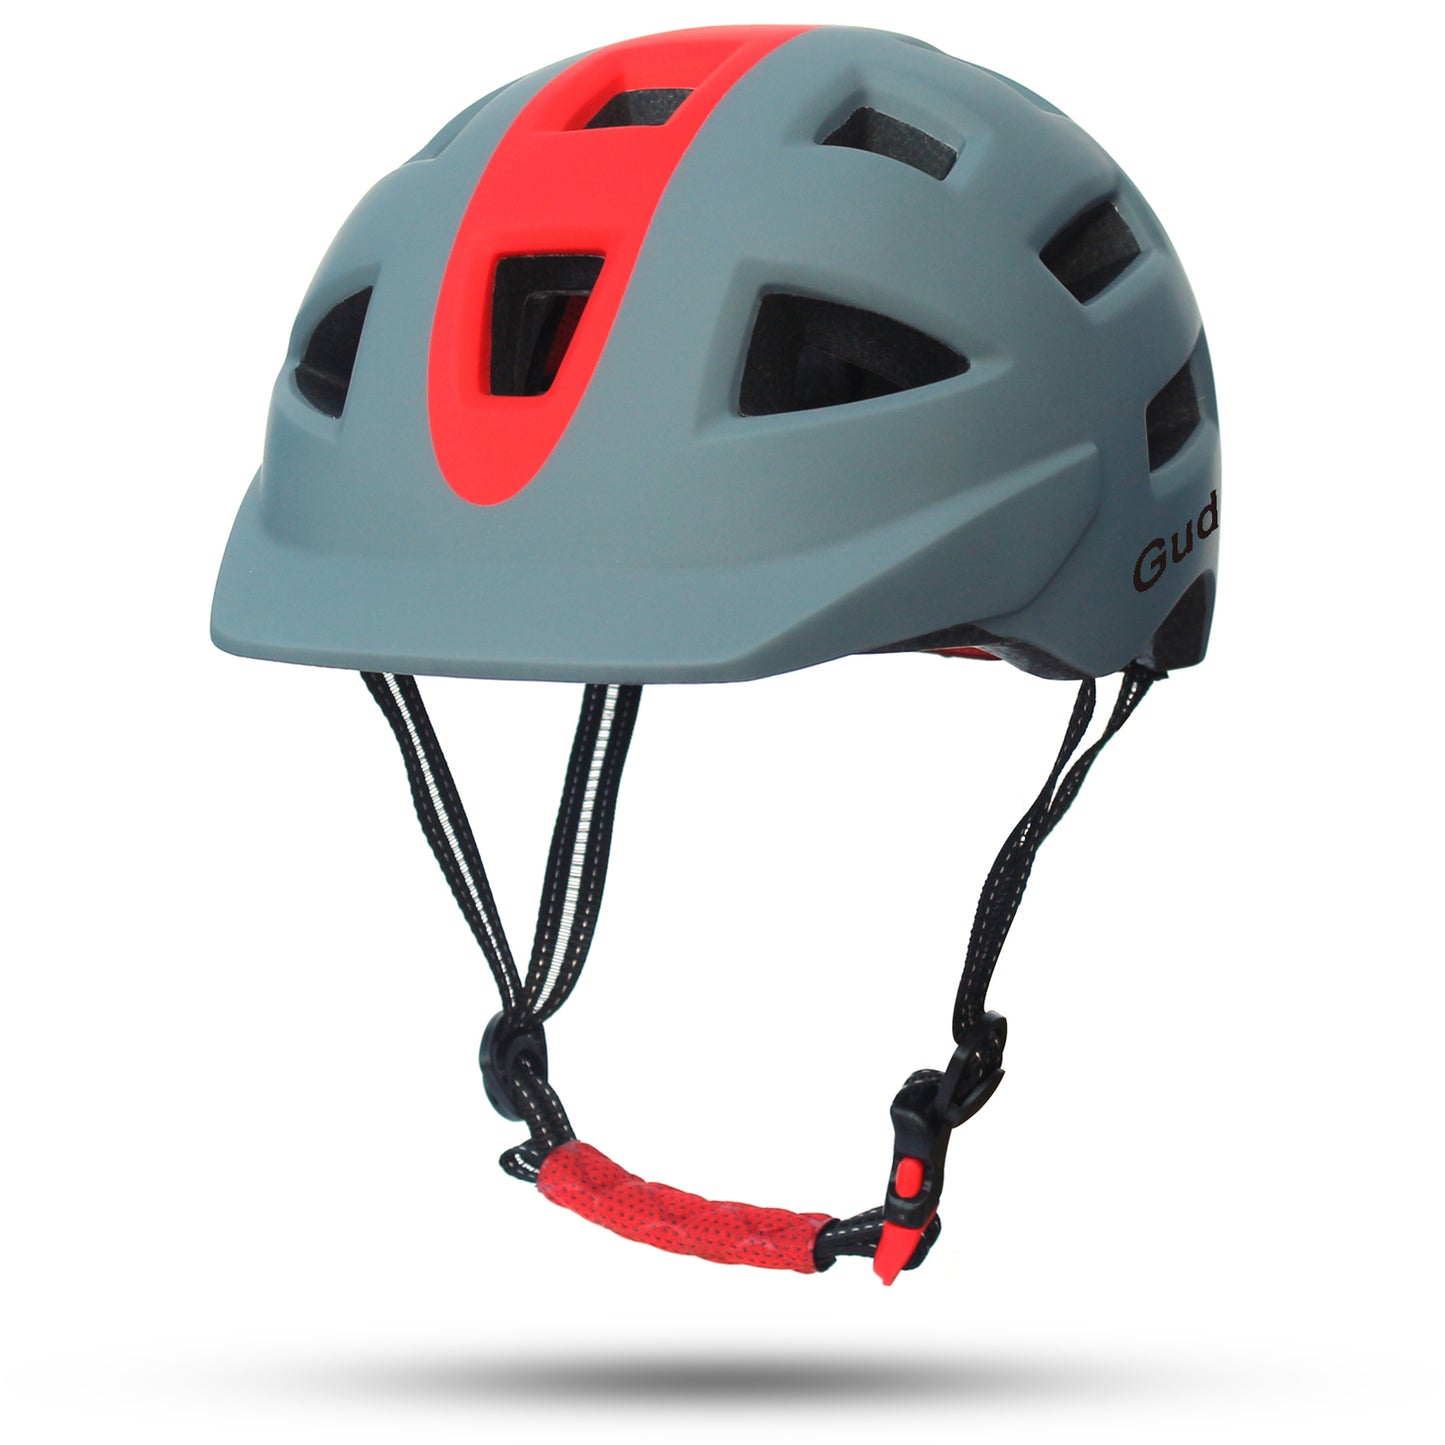 Gudook Manufacturer Bike Helmet KY-050